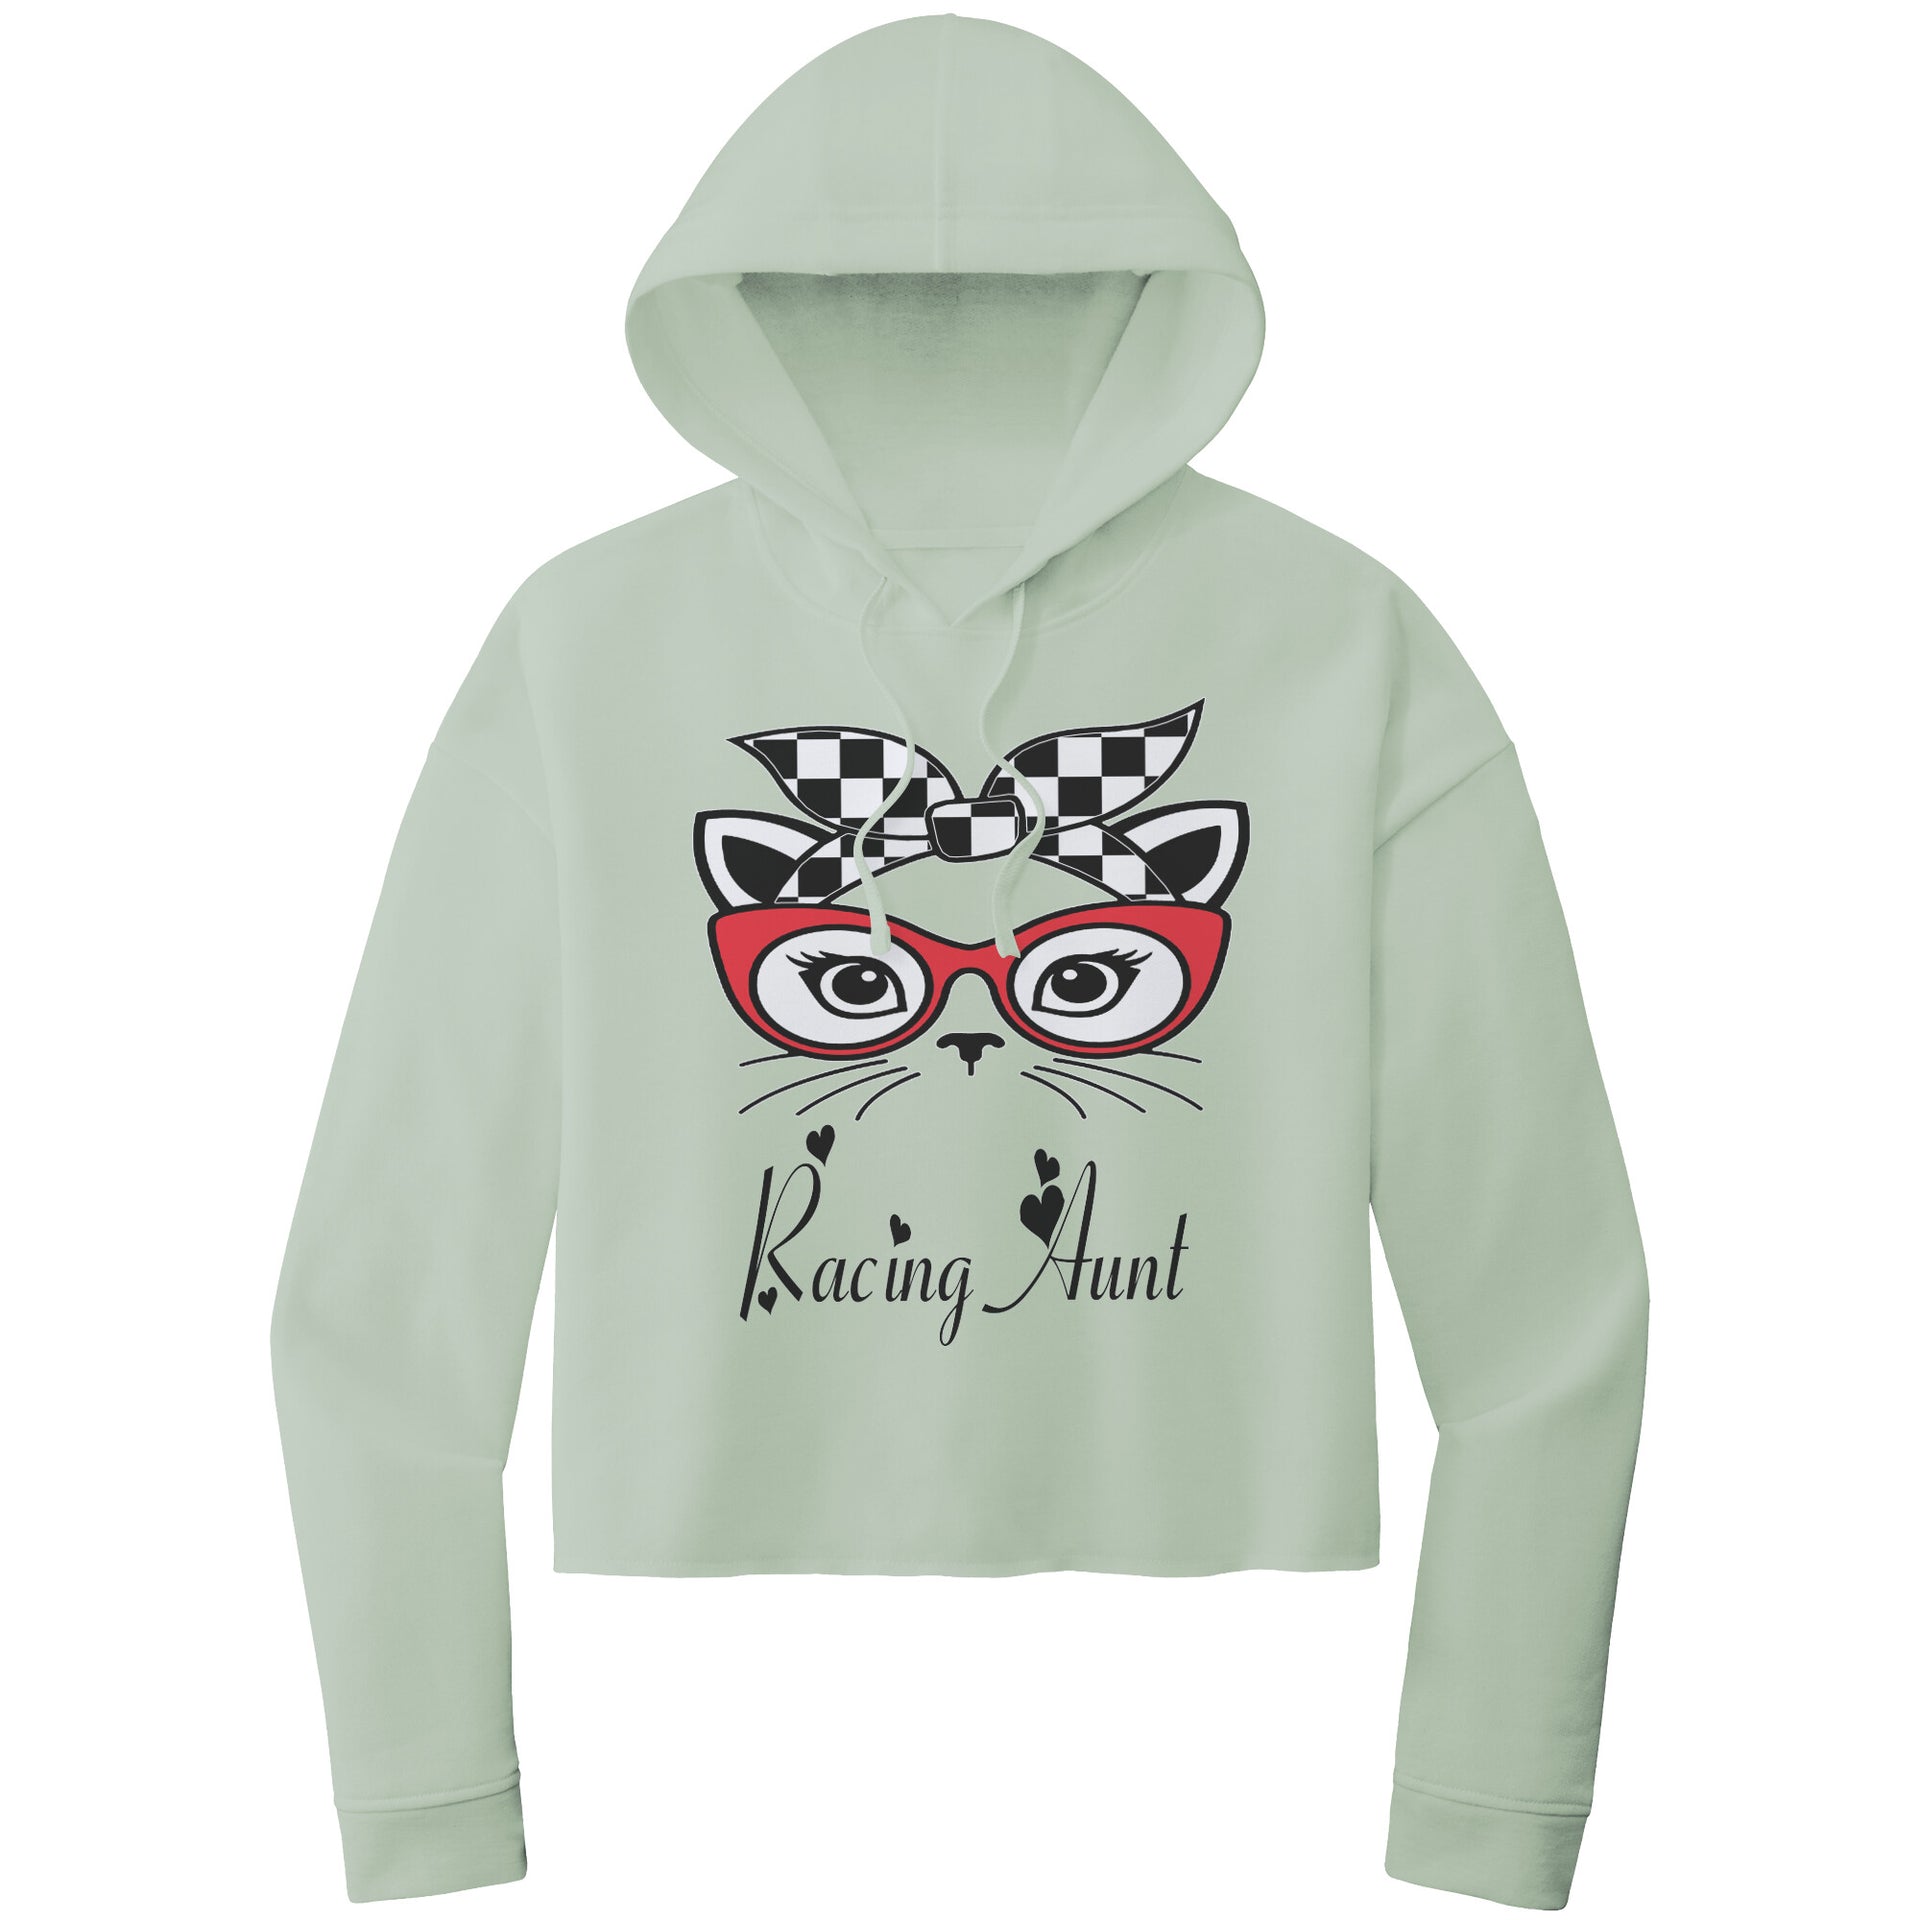 Racing Aunt Crop top hoodie